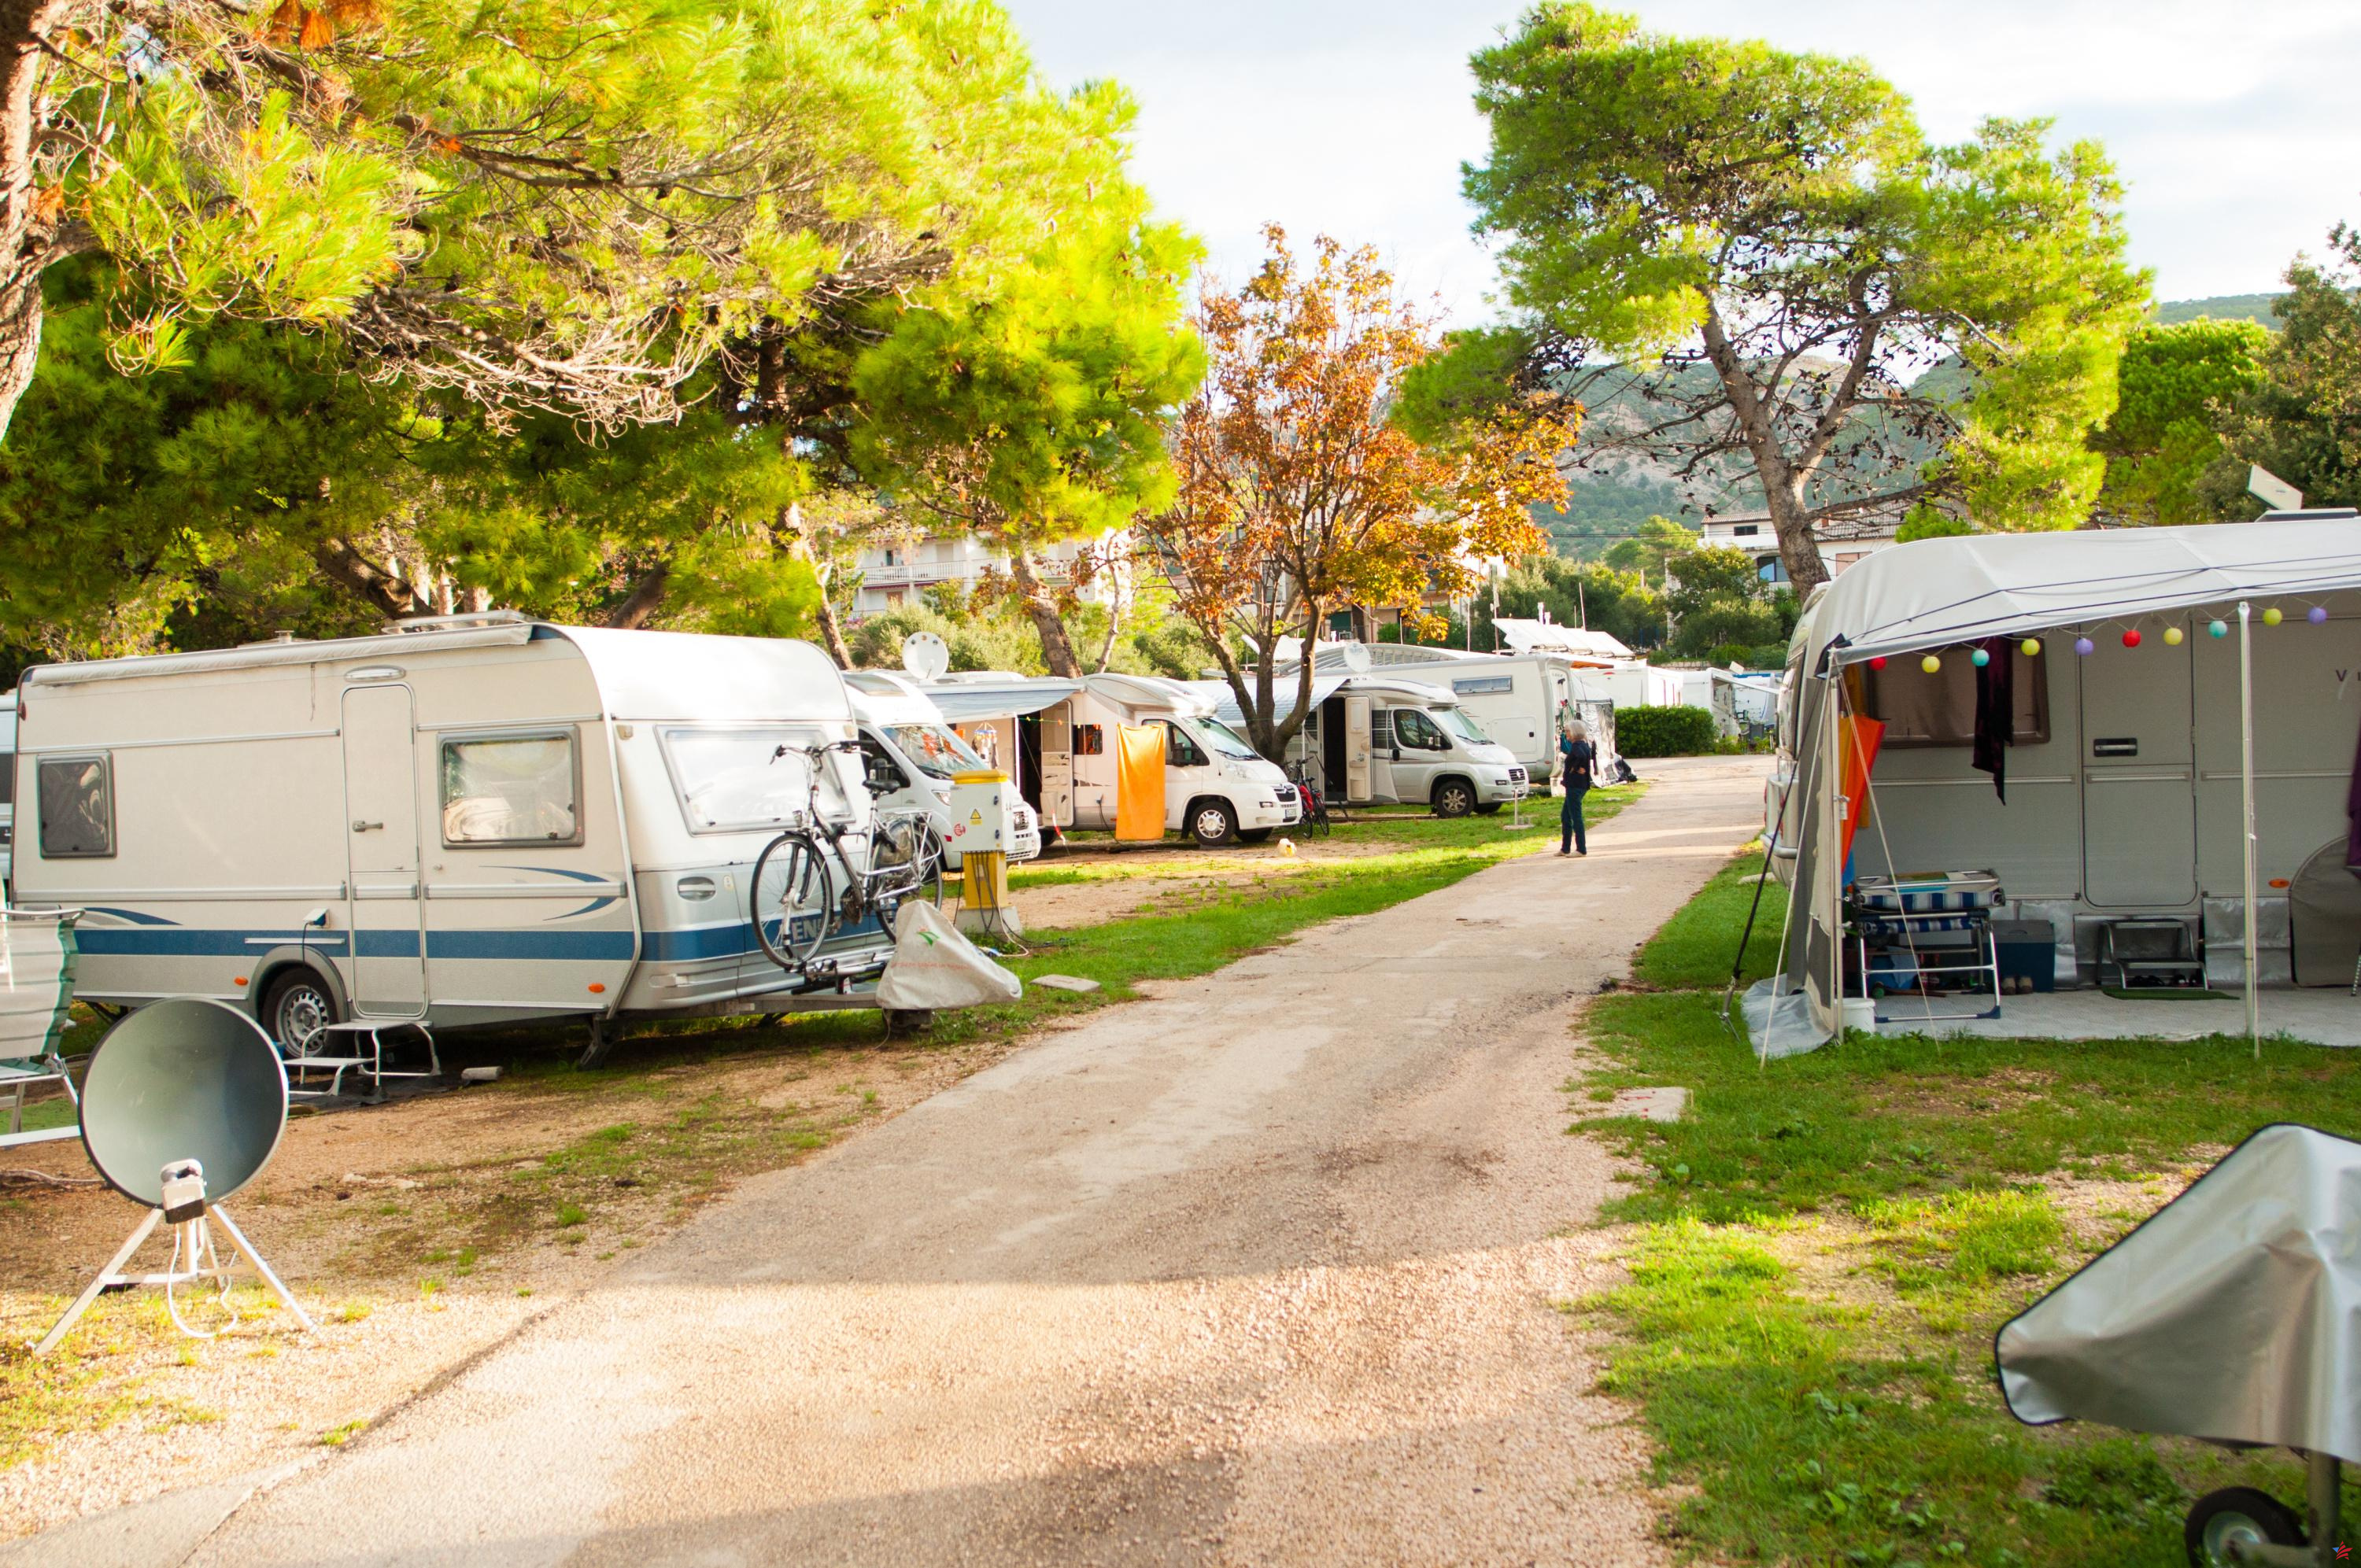 En los campings franceses, el fuerte retorno de nuestros vecinos europeos